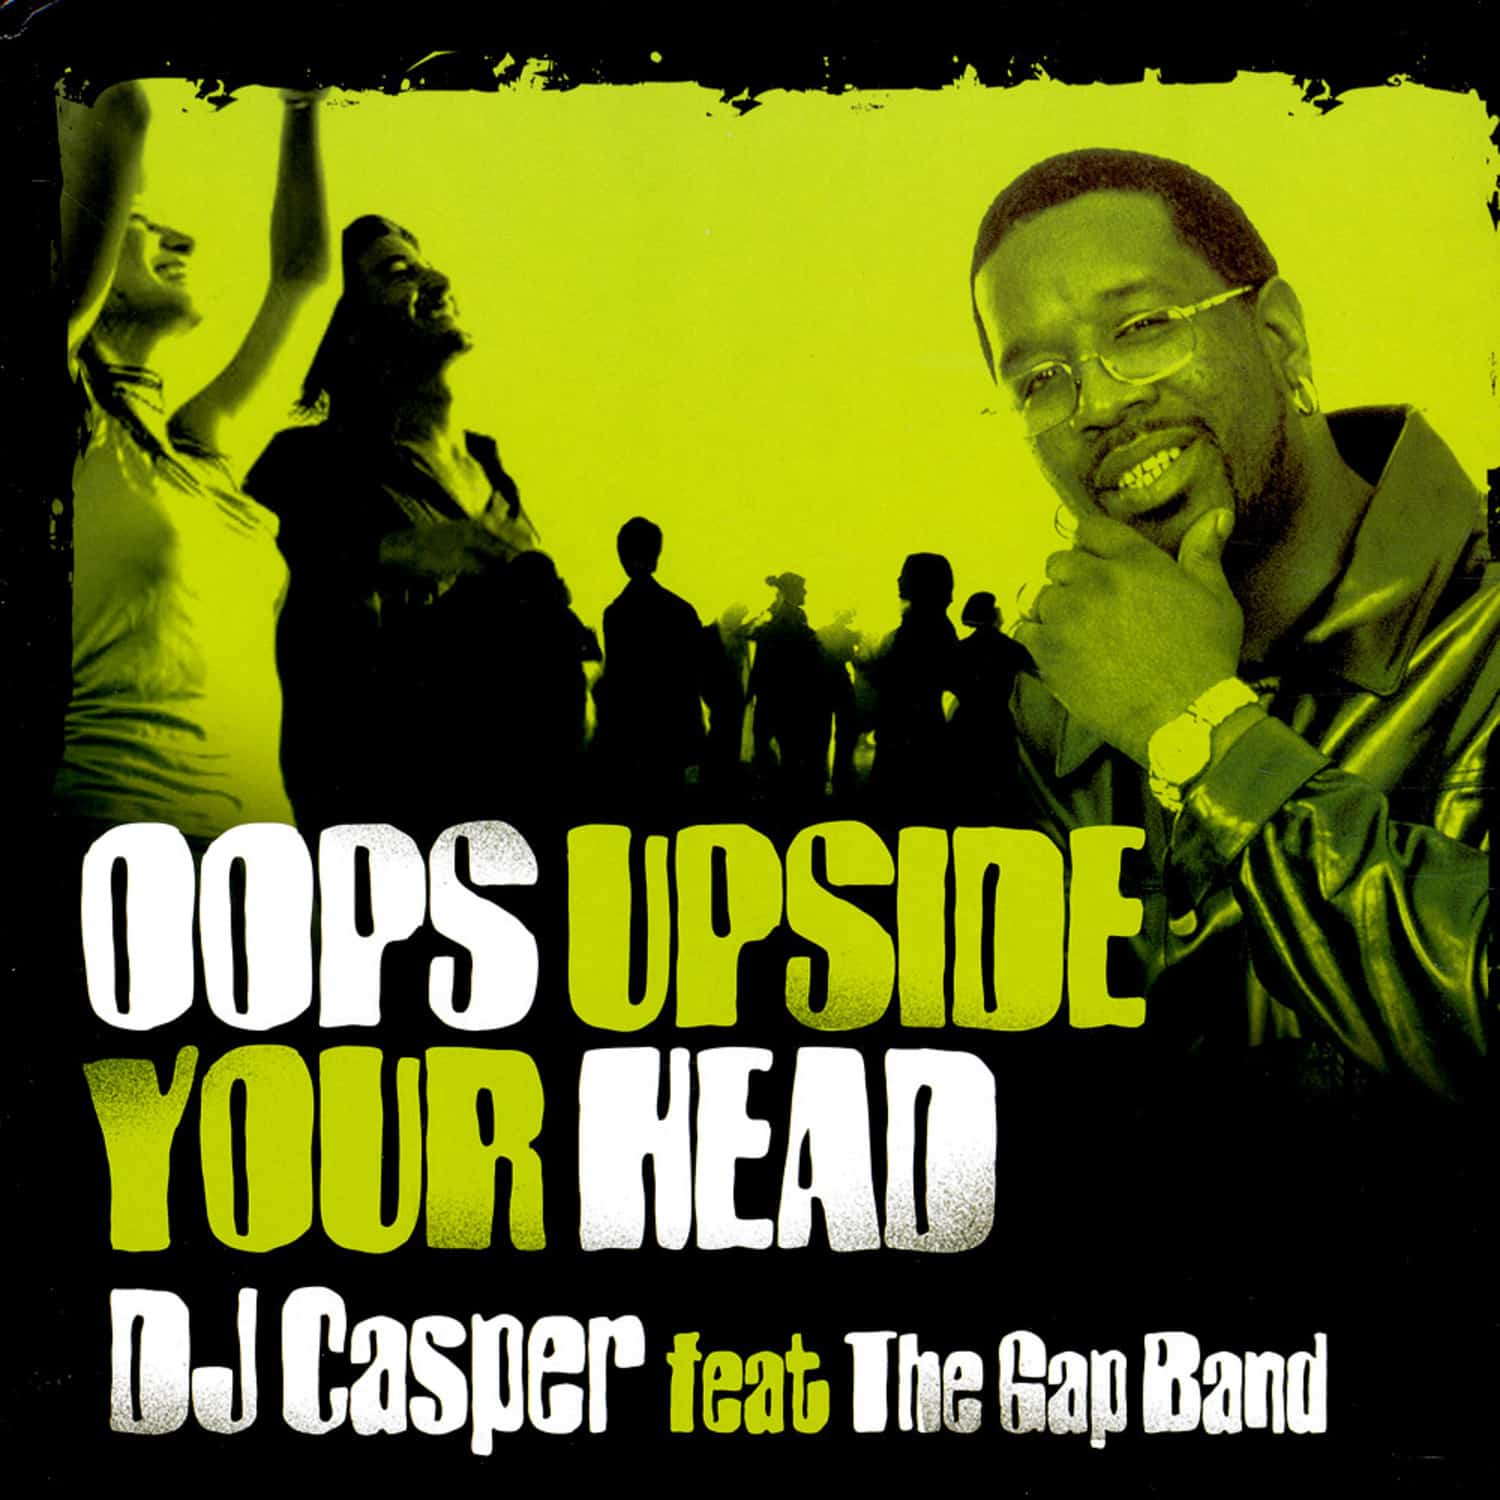 DJ Casper feat Gap Band - OOPS UPSIDE YOUR HEAD